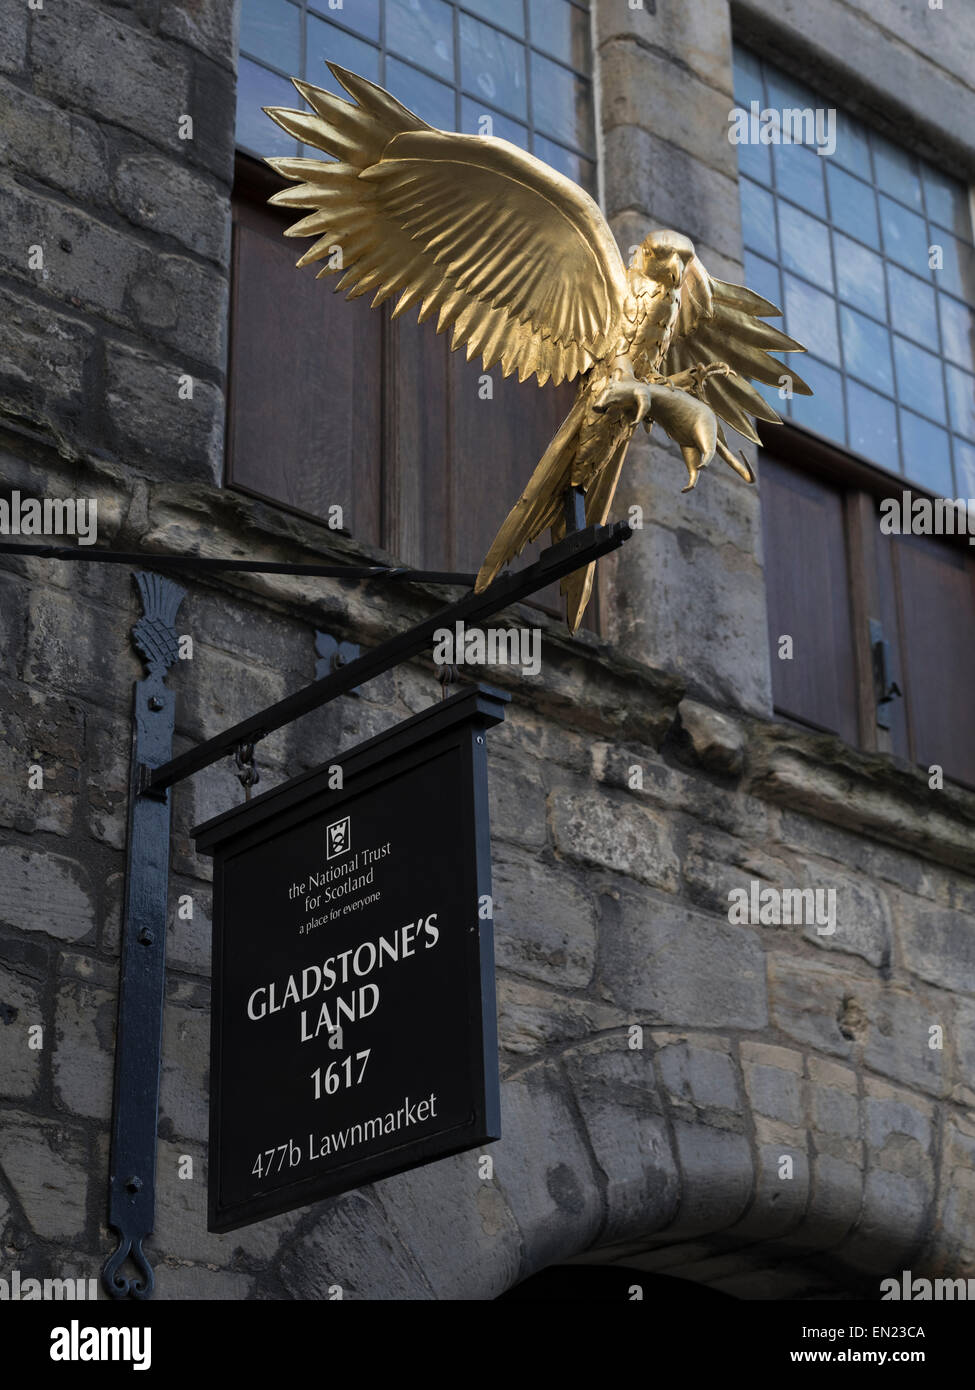 Gladstone's Land 1617, Edimbourg, Ecosse, Royaume-Uni Banque D'Images